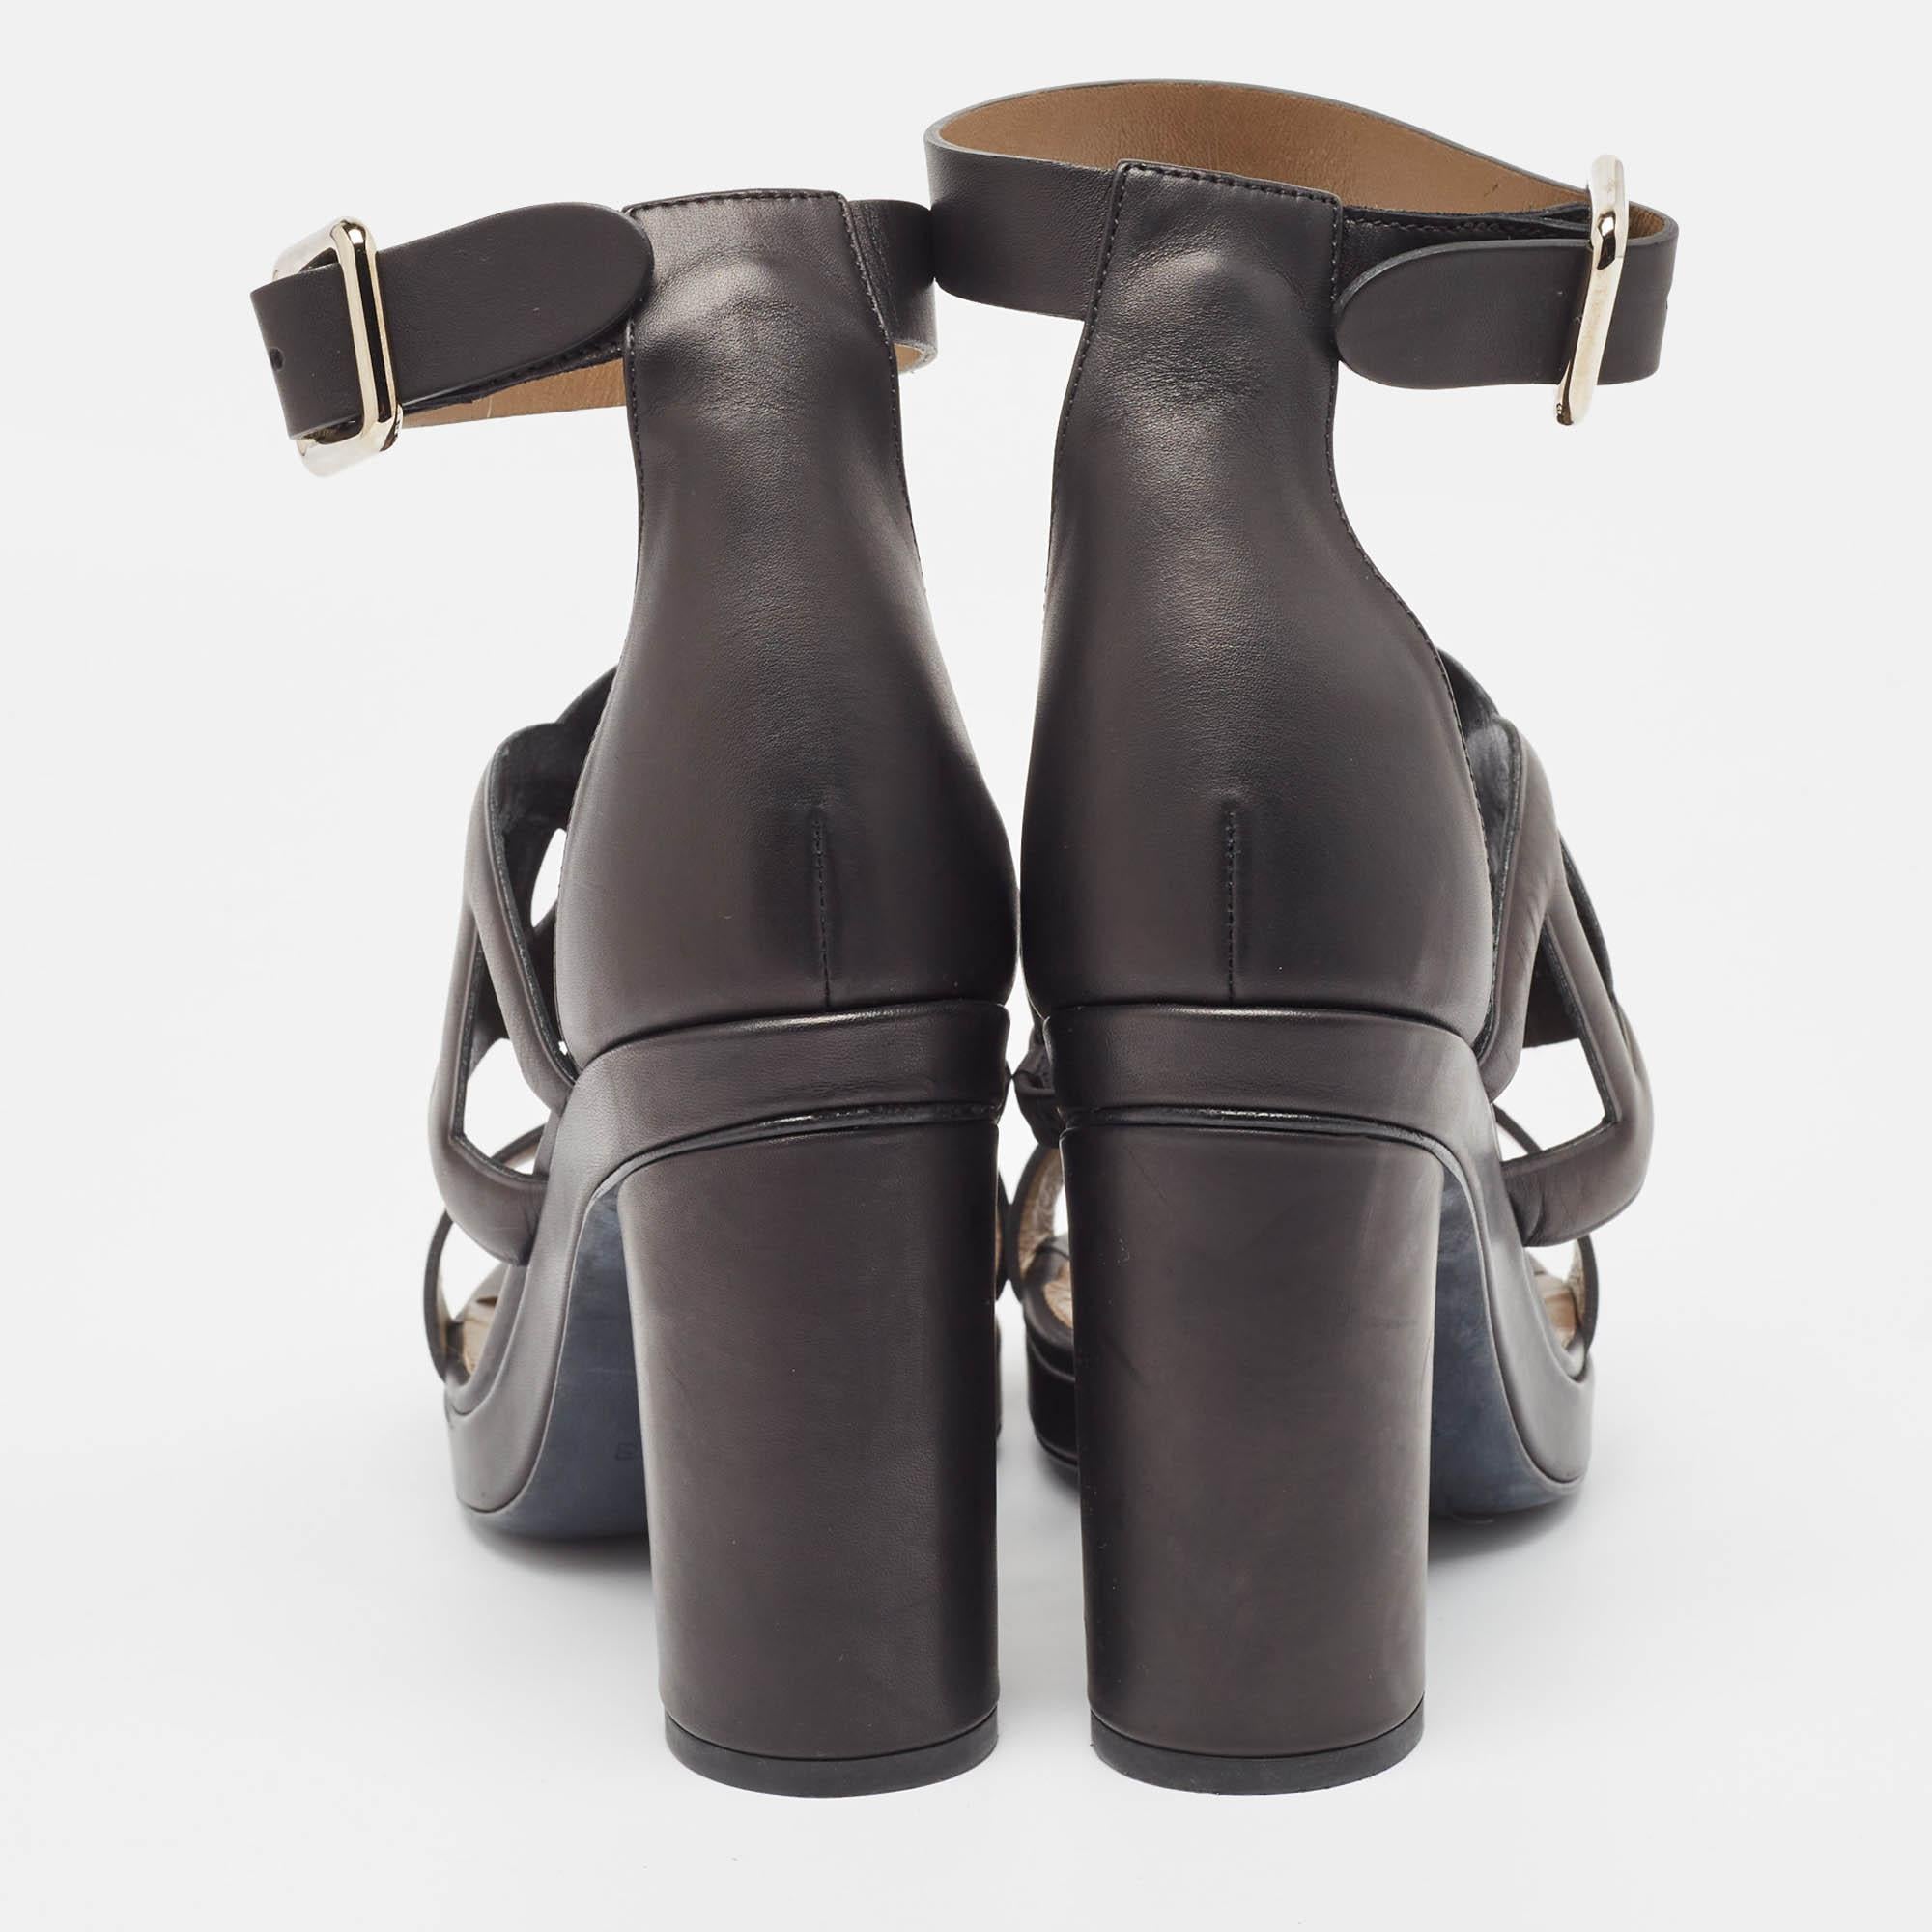 Hermes Black Leather Block Heel Ankle Strap Sandals Size 39 1